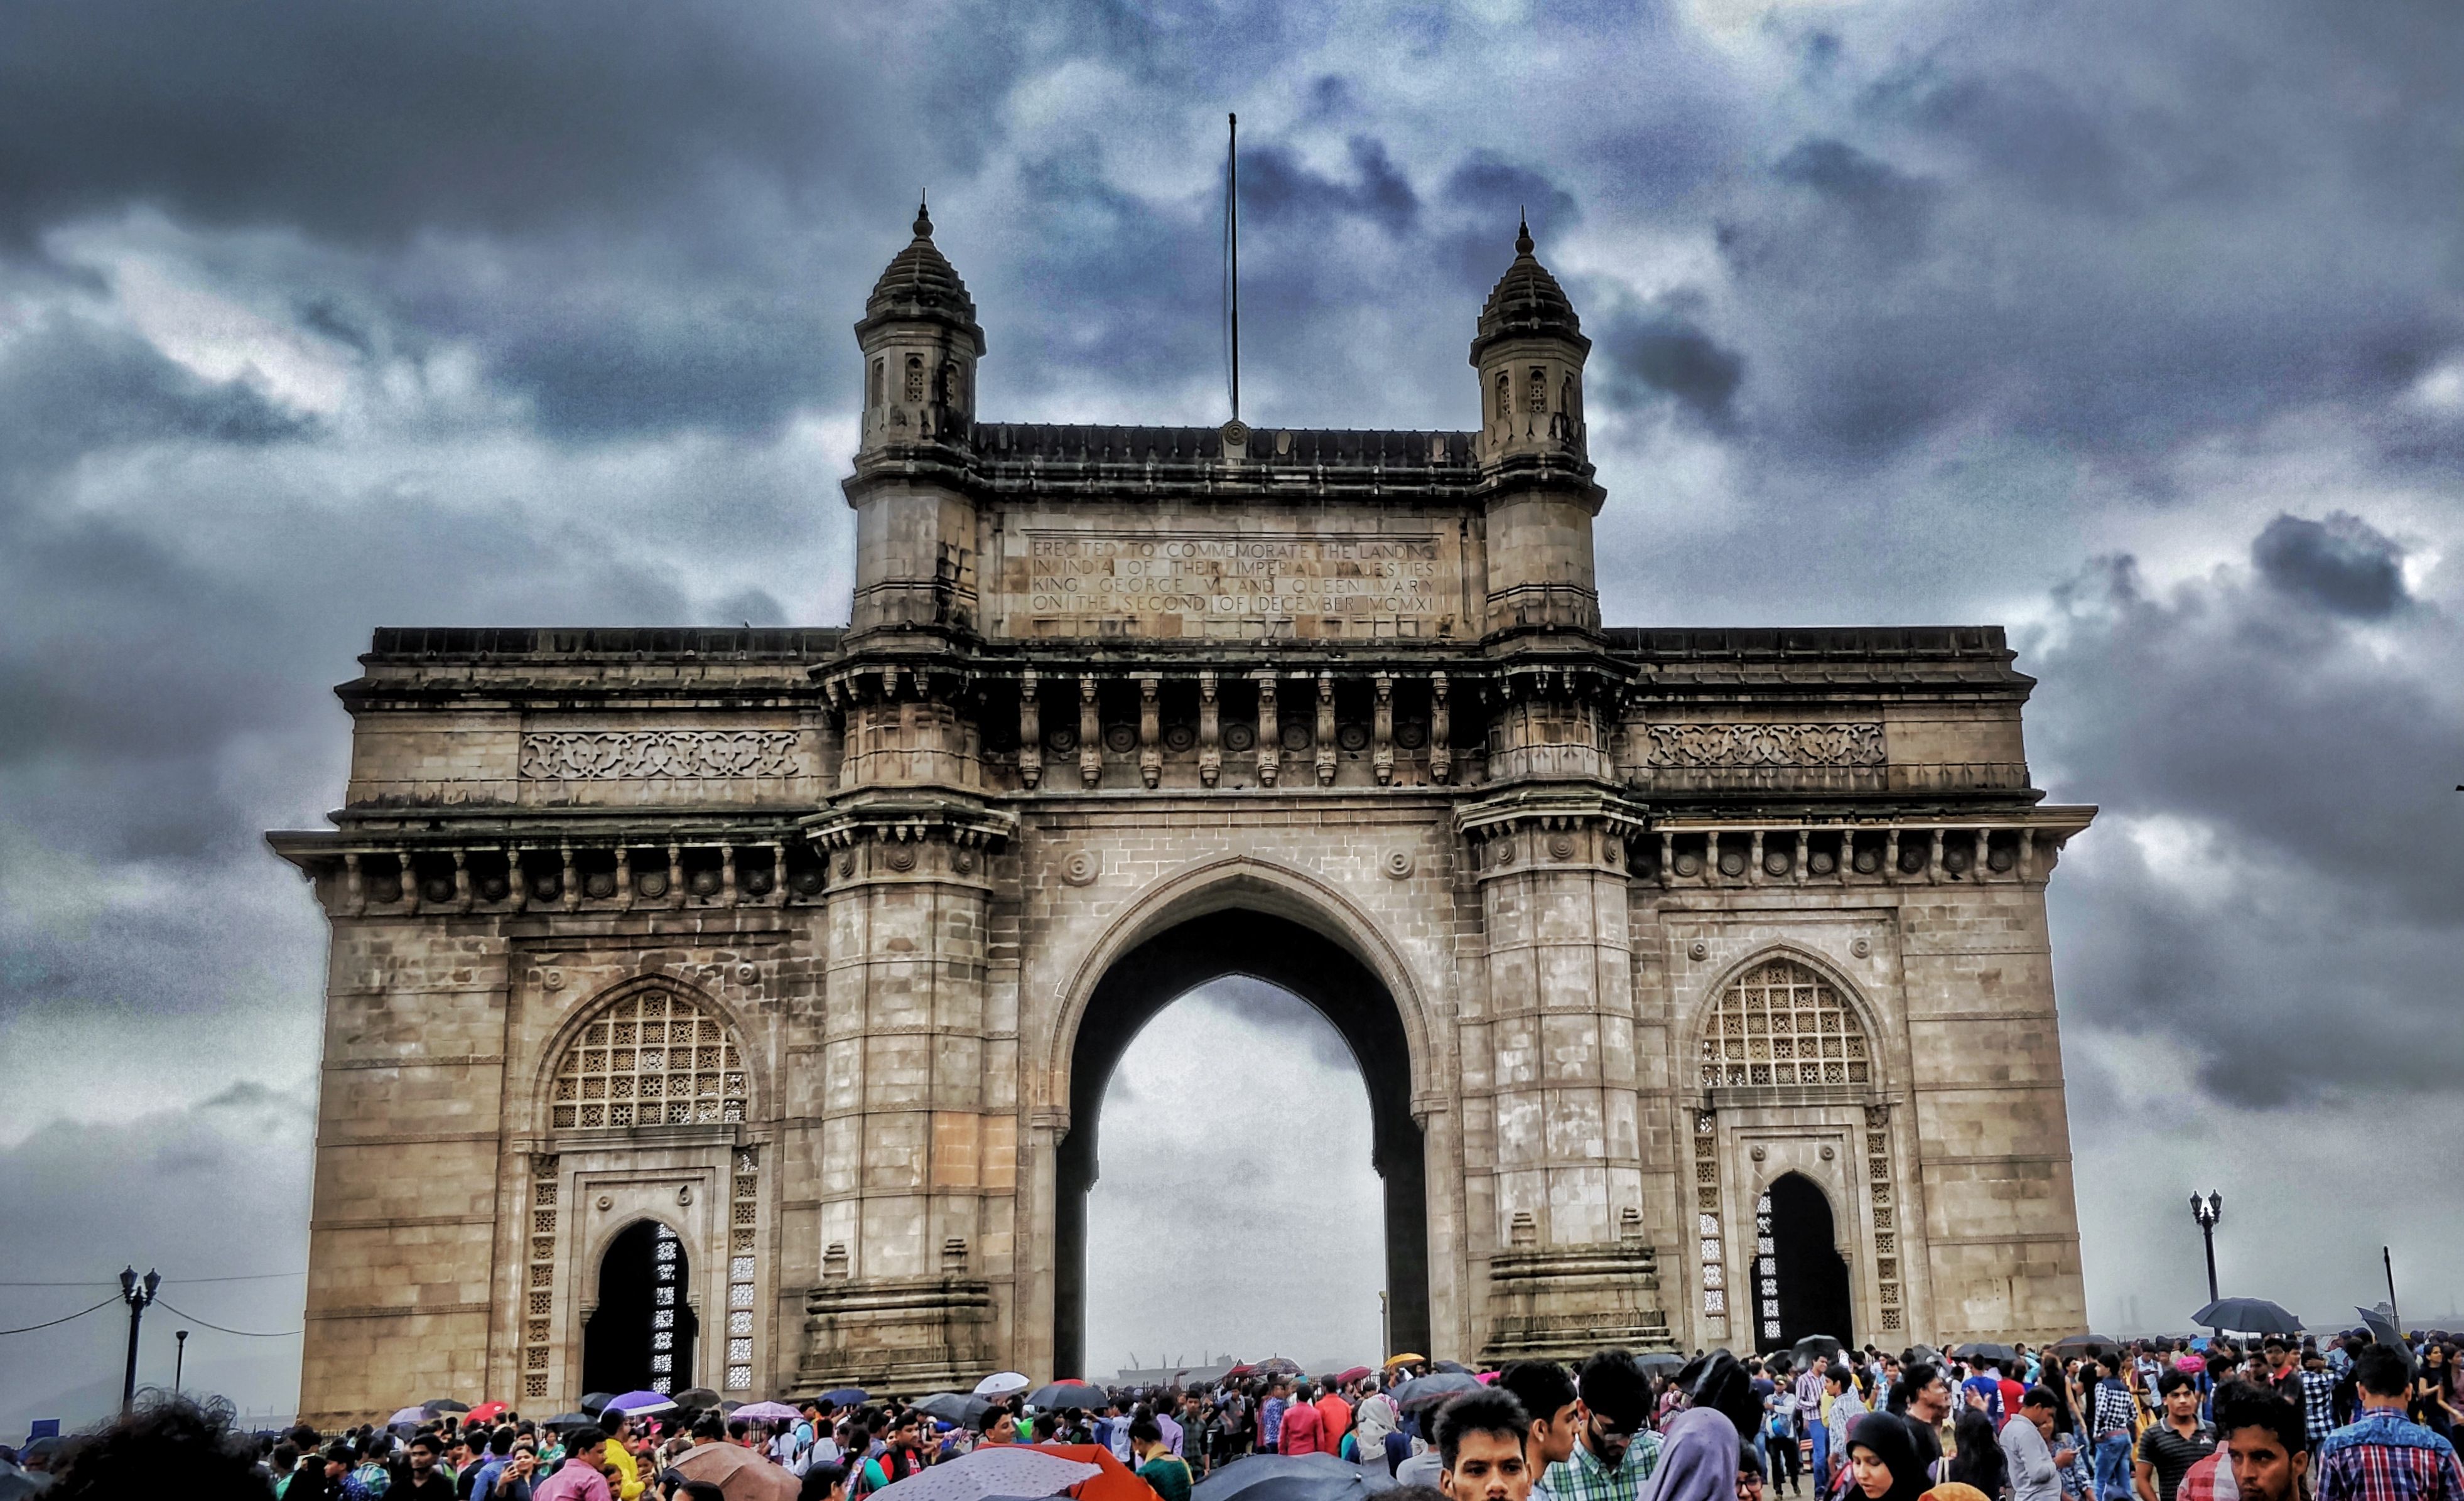 The gateway of india (mumbai). iPhone, iPad tablet, Macbook